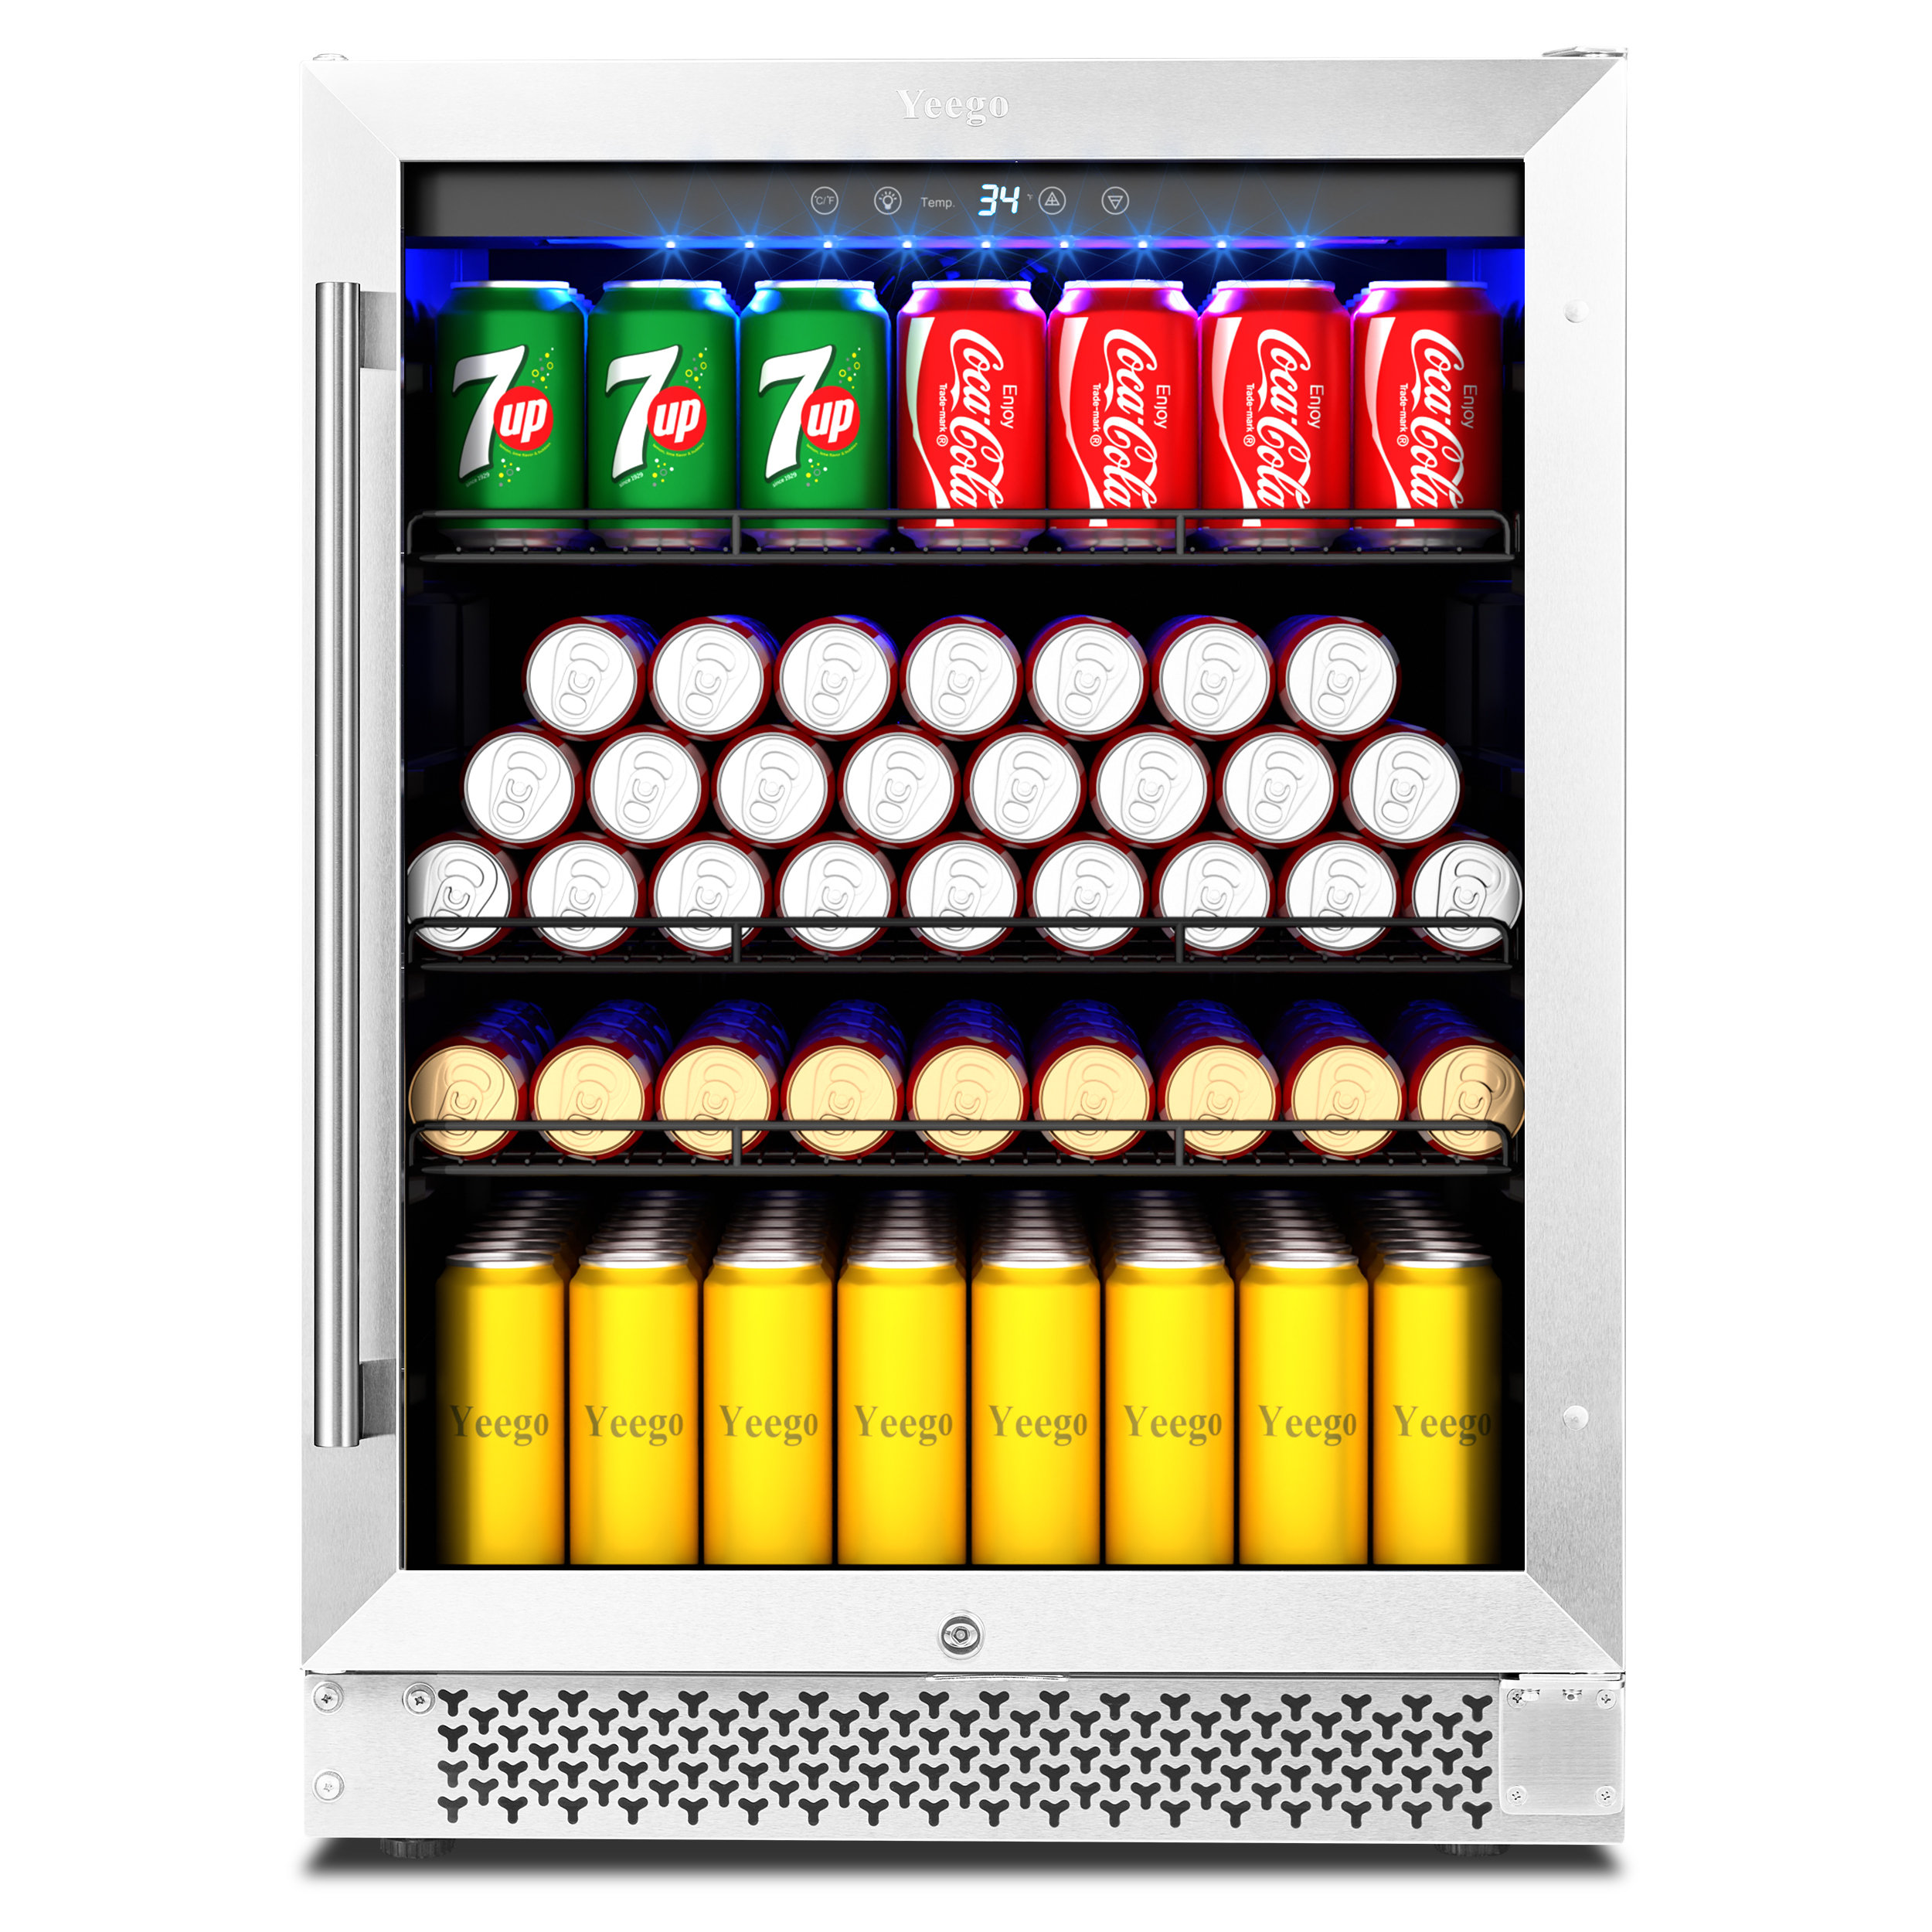 Lanbo 110 Cans 6 Bottle Under Counter Built-in Compressor Beverage Cooler 24 inch Width